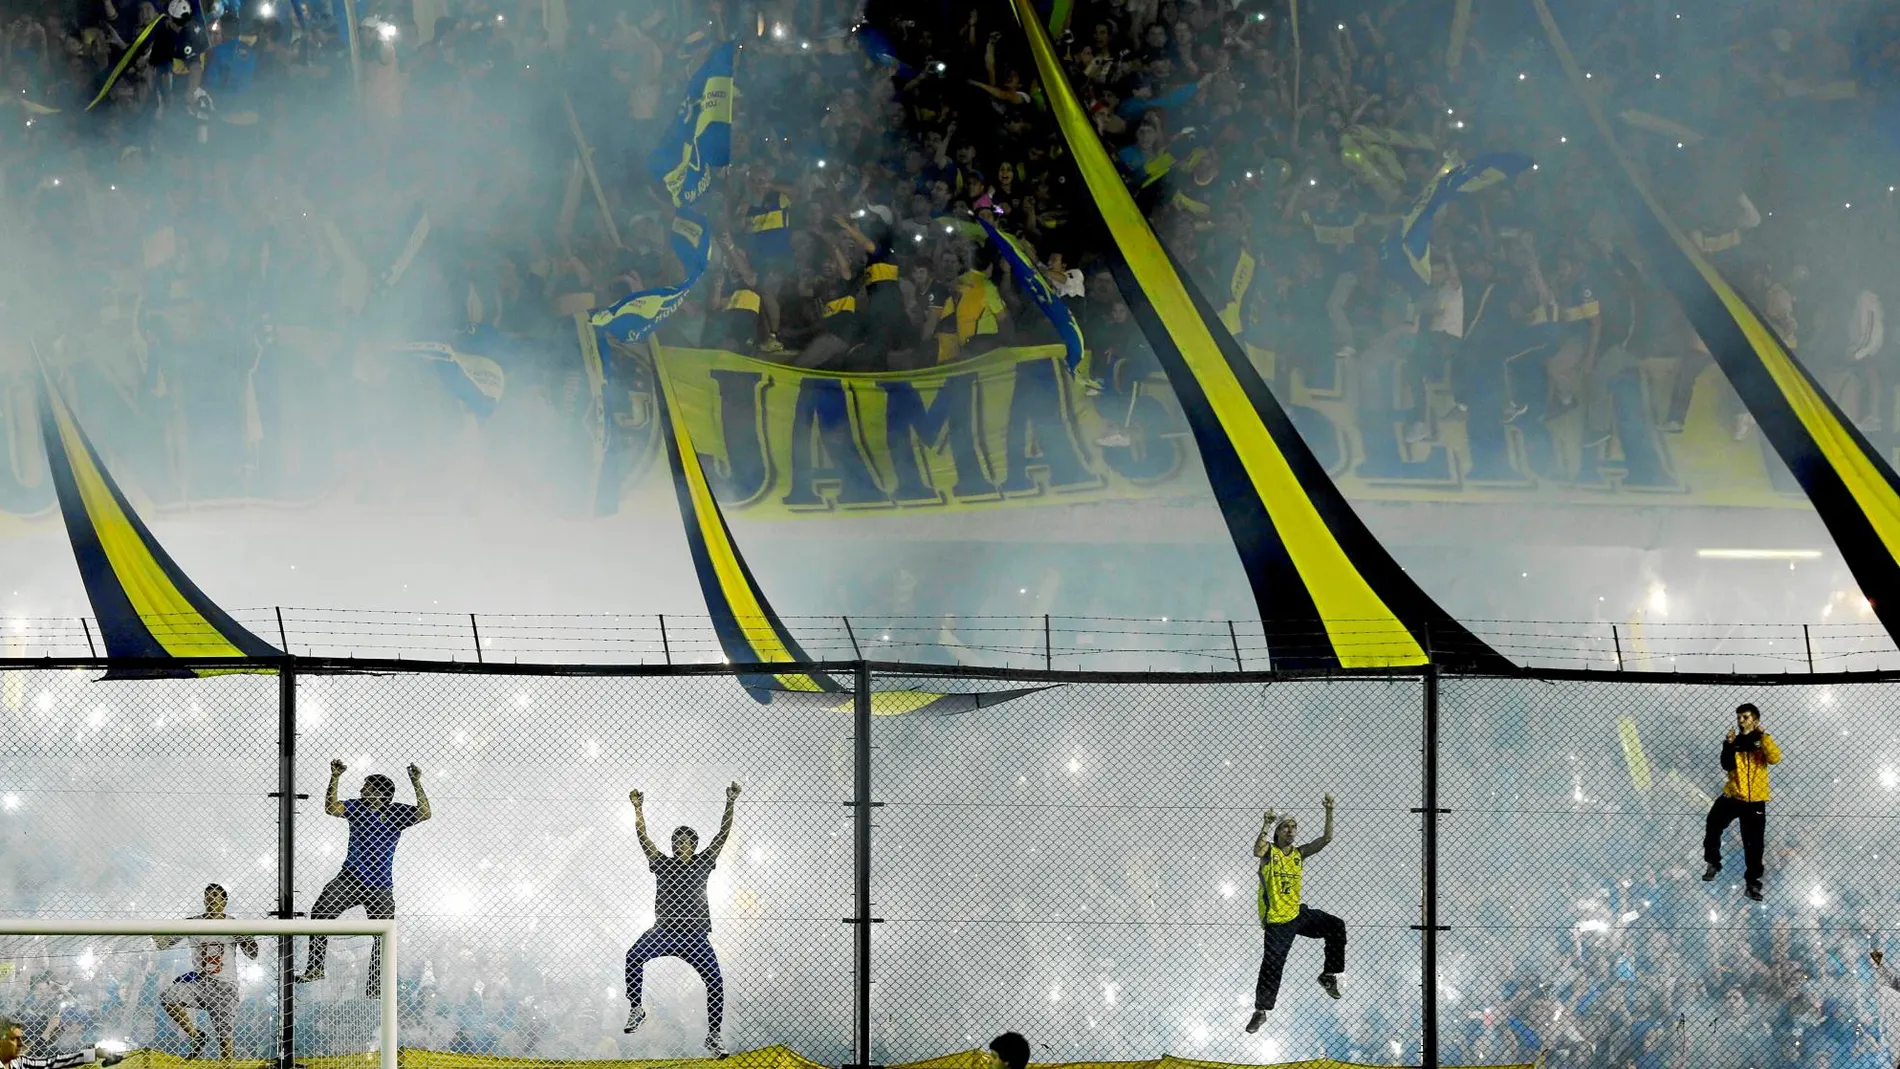 Hinchas de Boca en La Bombonera, en un partido de su equipo. La Doce es la grada conocida del conjunto argentino, por la pasión con la que viven sus partidos